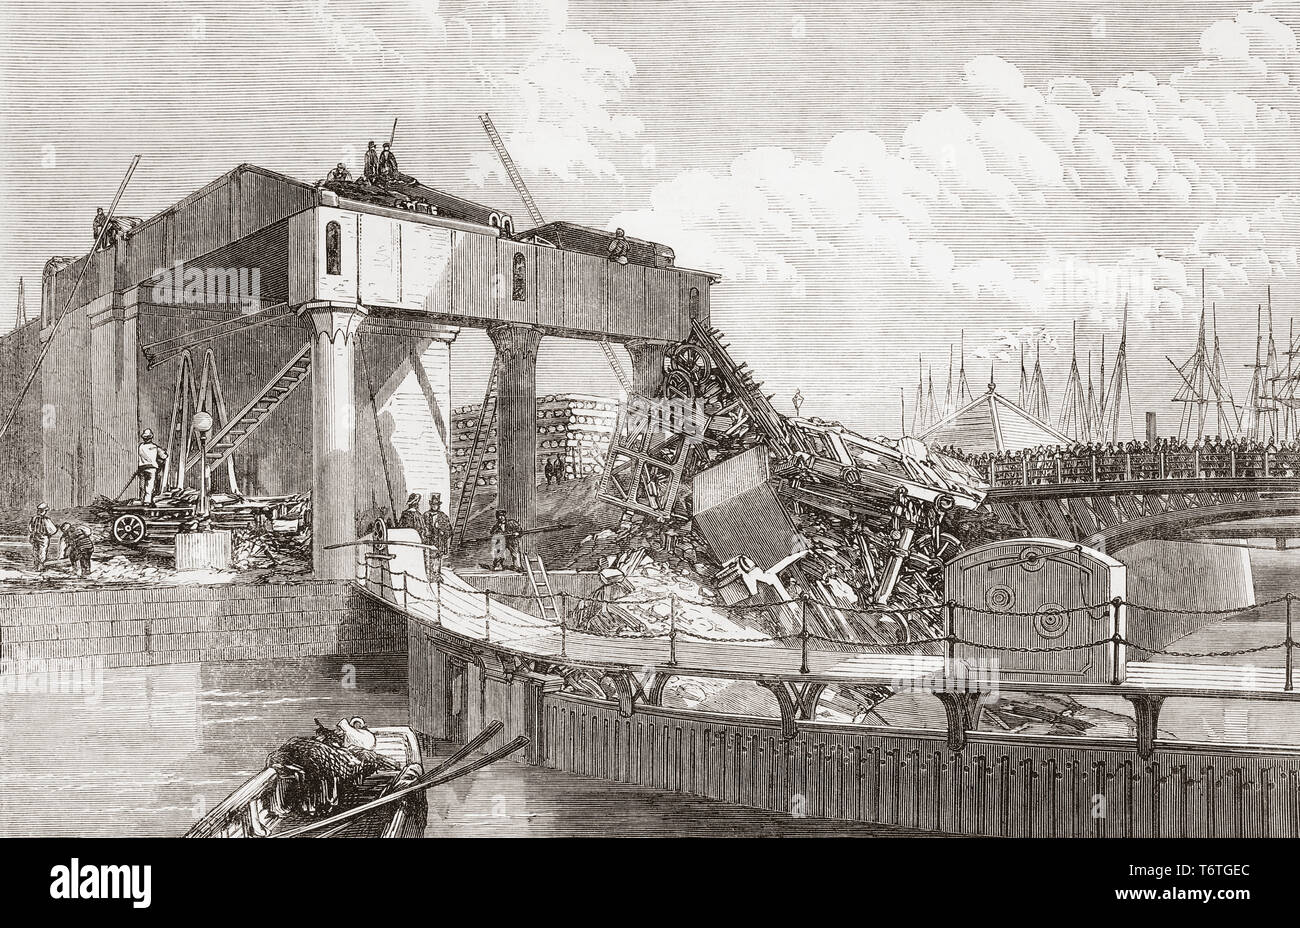 Szene der Bahn Unfall mit einem kohlenzug am Eingang Nord Dock, Swansea, Wales aufgrund einer autohupe Fehler, 1865. Von der Illustrated London News, veröffentlicht 1865. Stockfoto